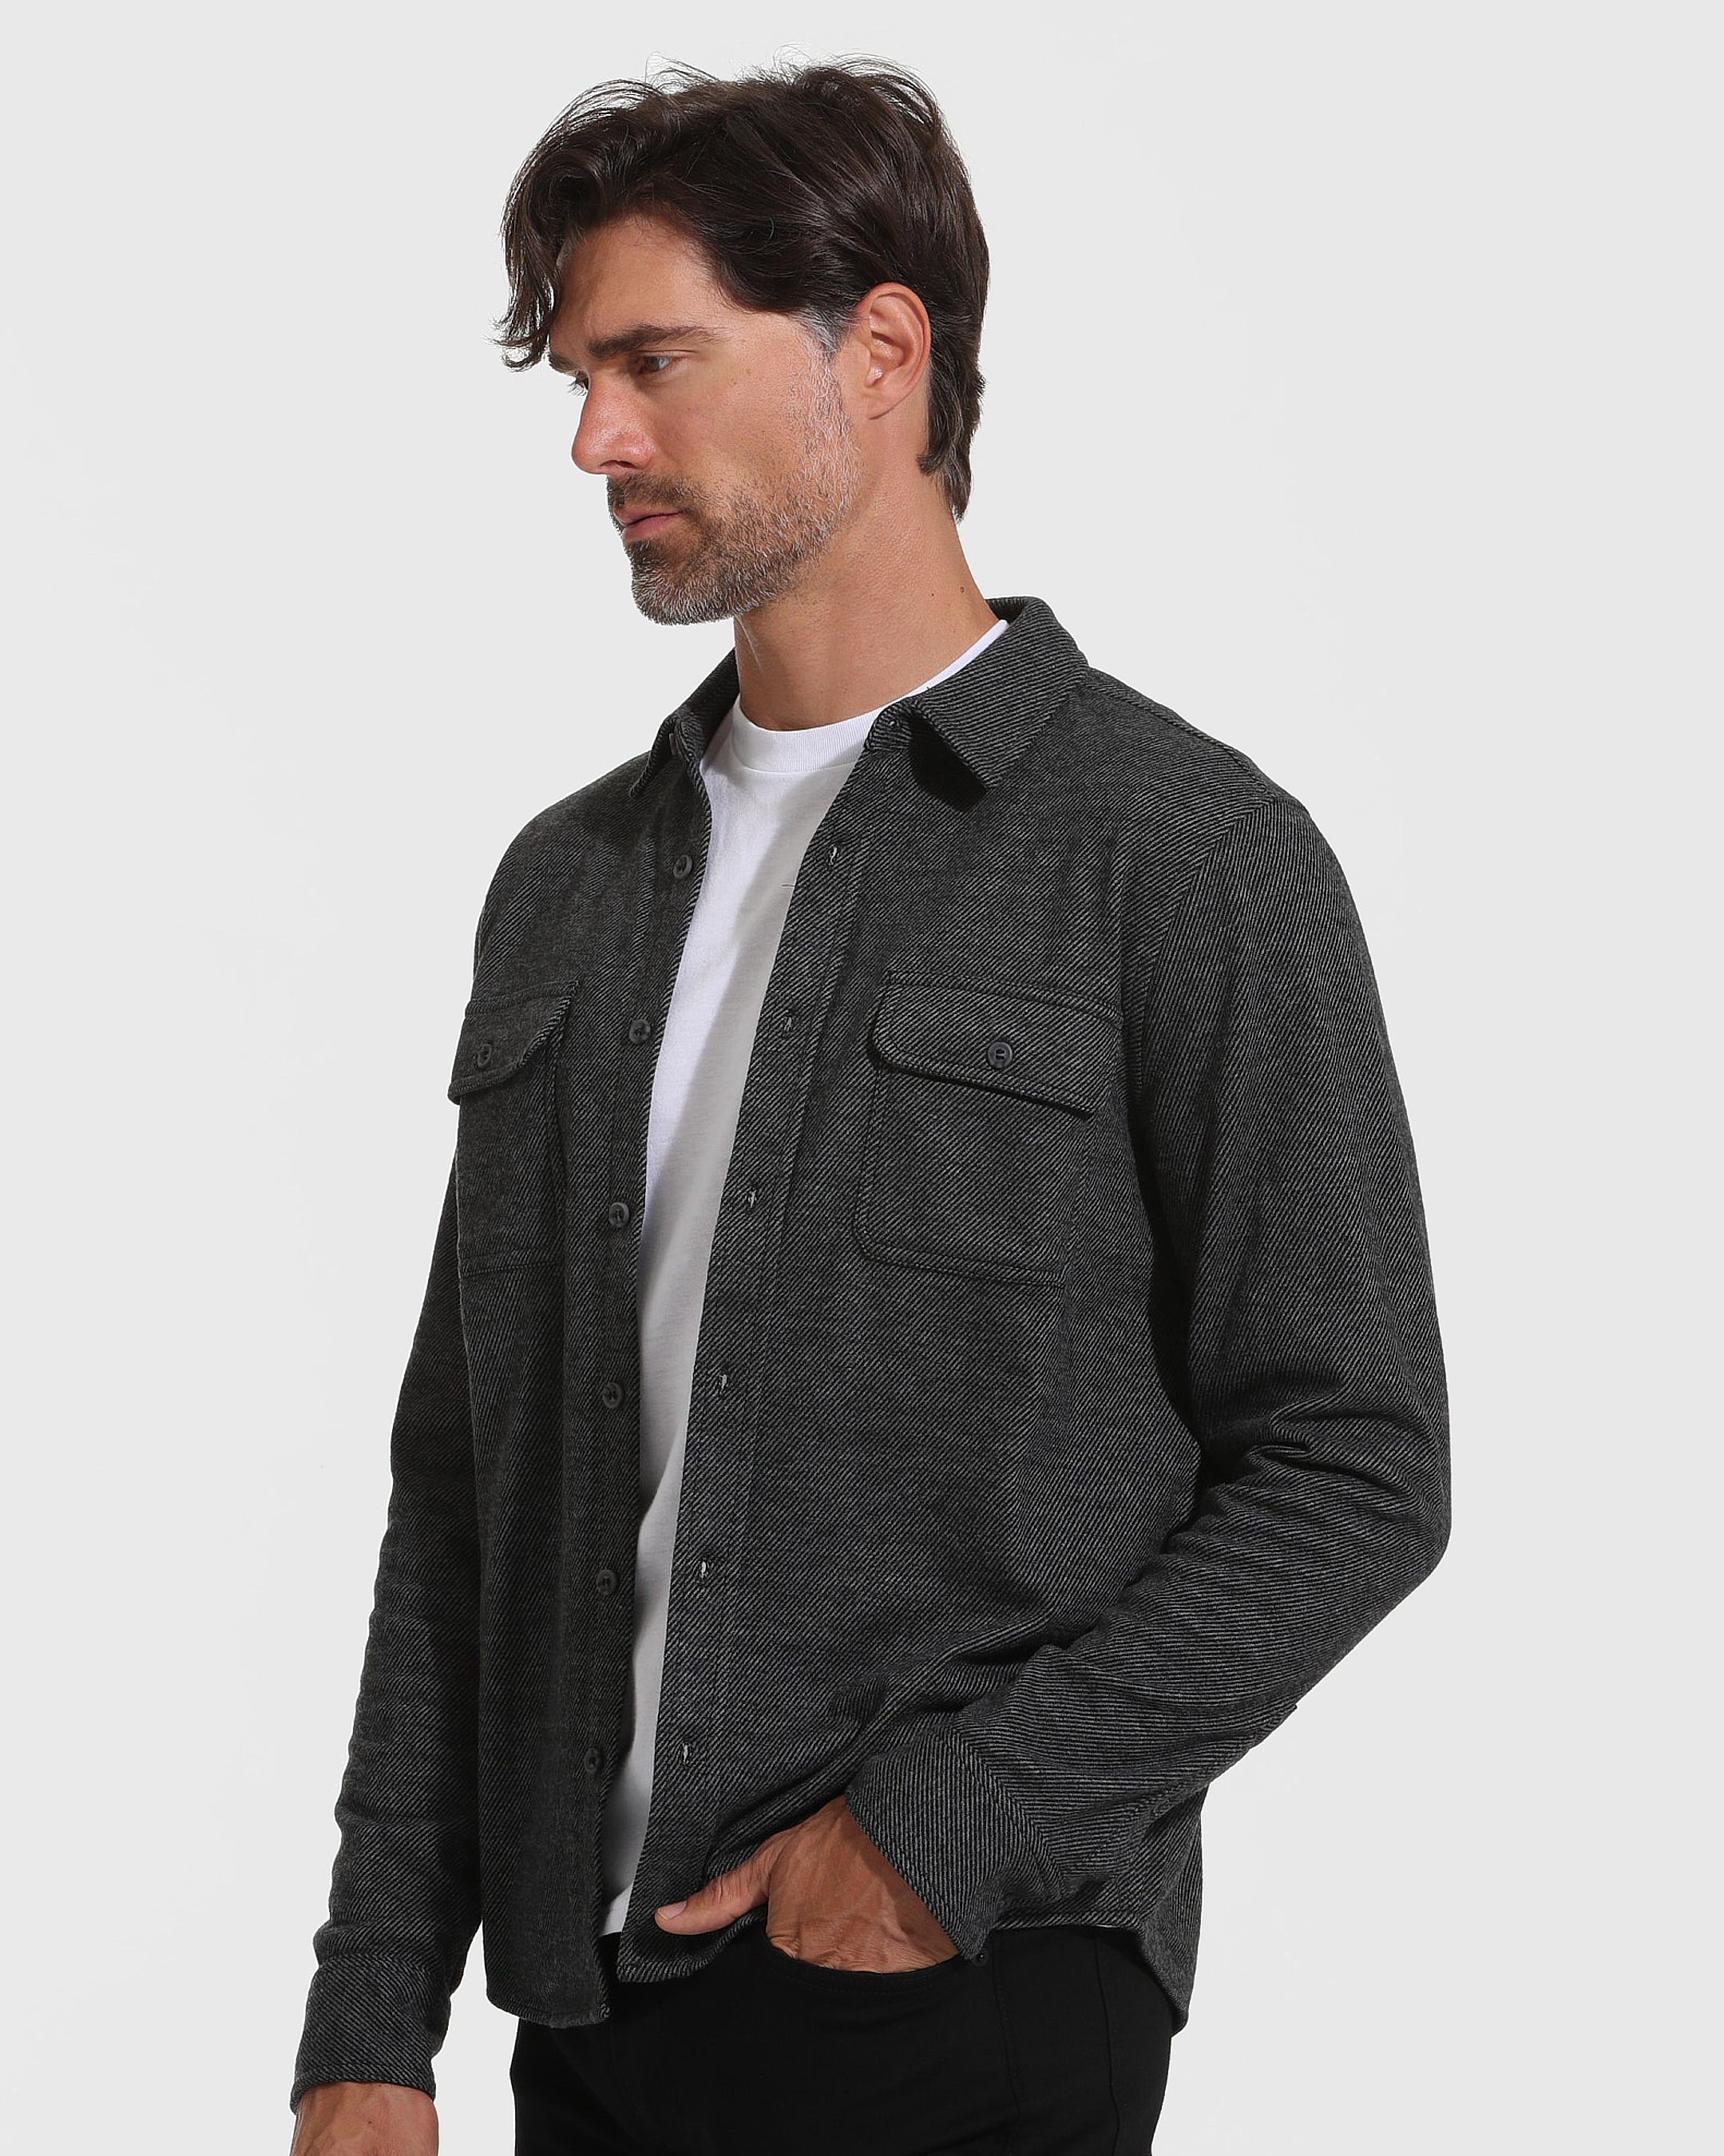 Standard Sweater Button Up Shirt 3-Pack